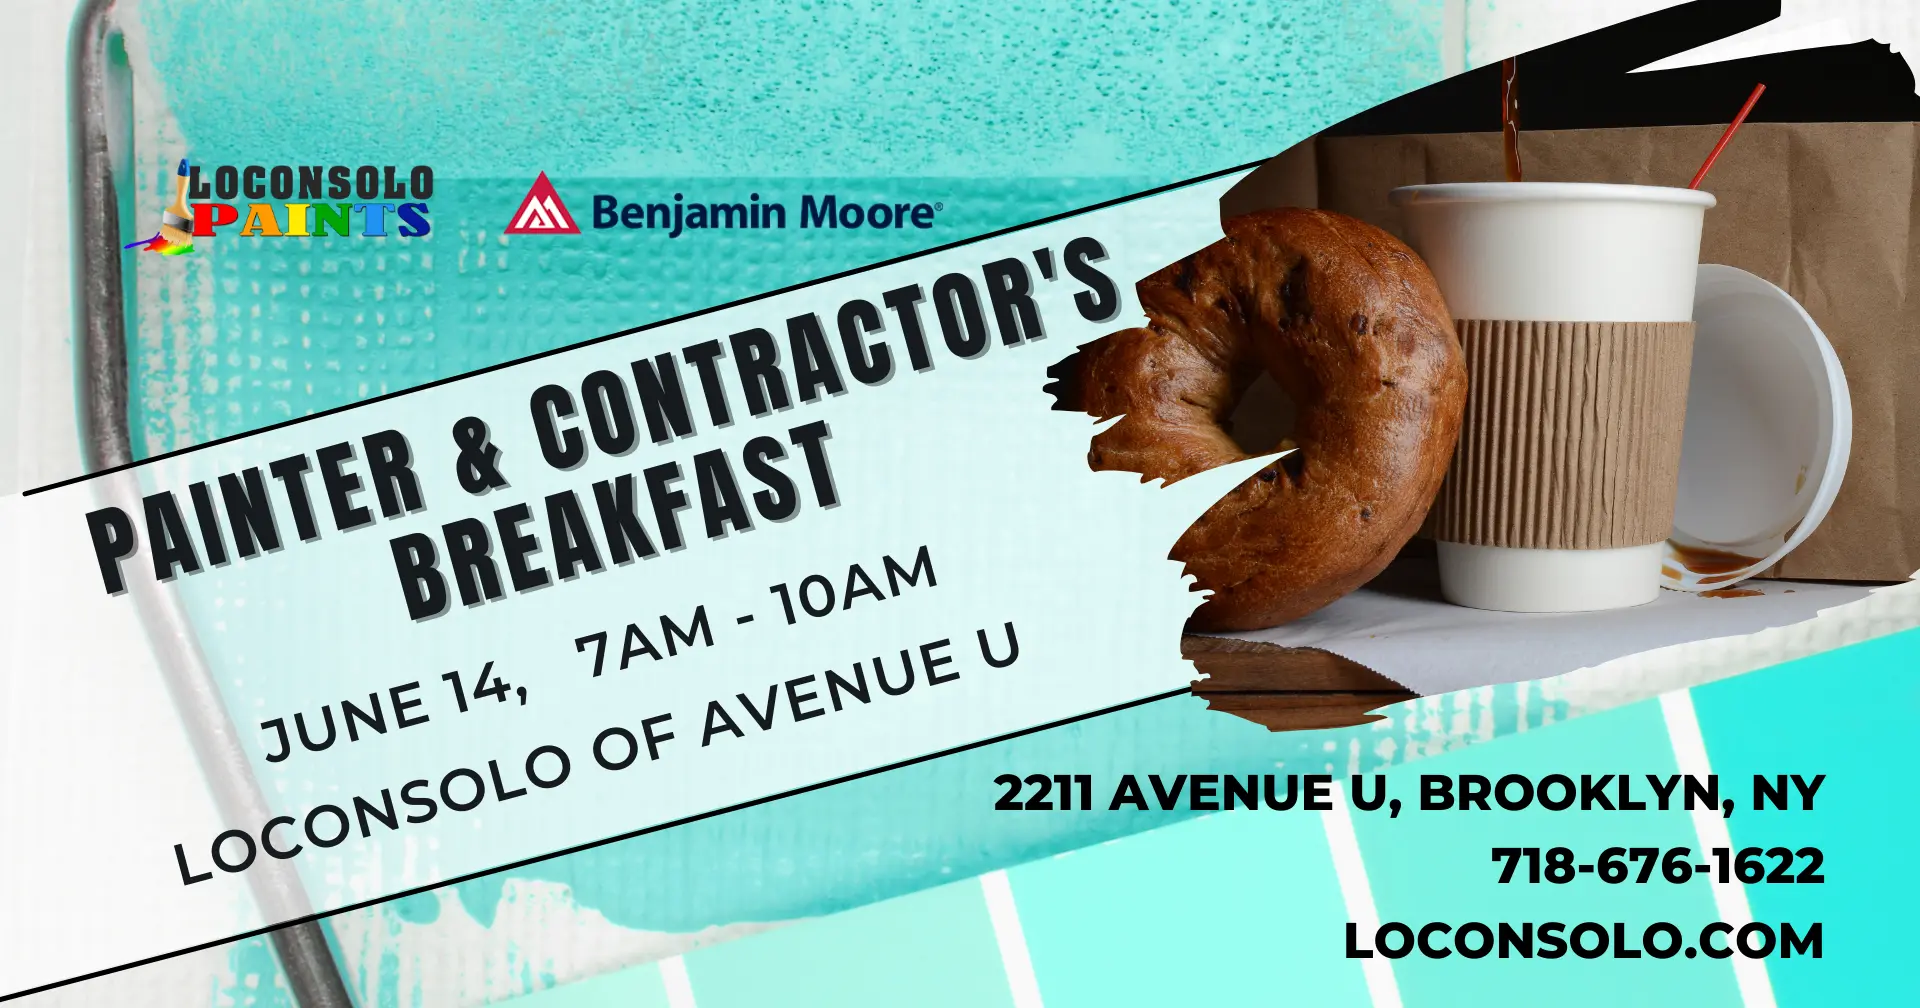 Painter and Contractors Breakfast June 14 Ave U